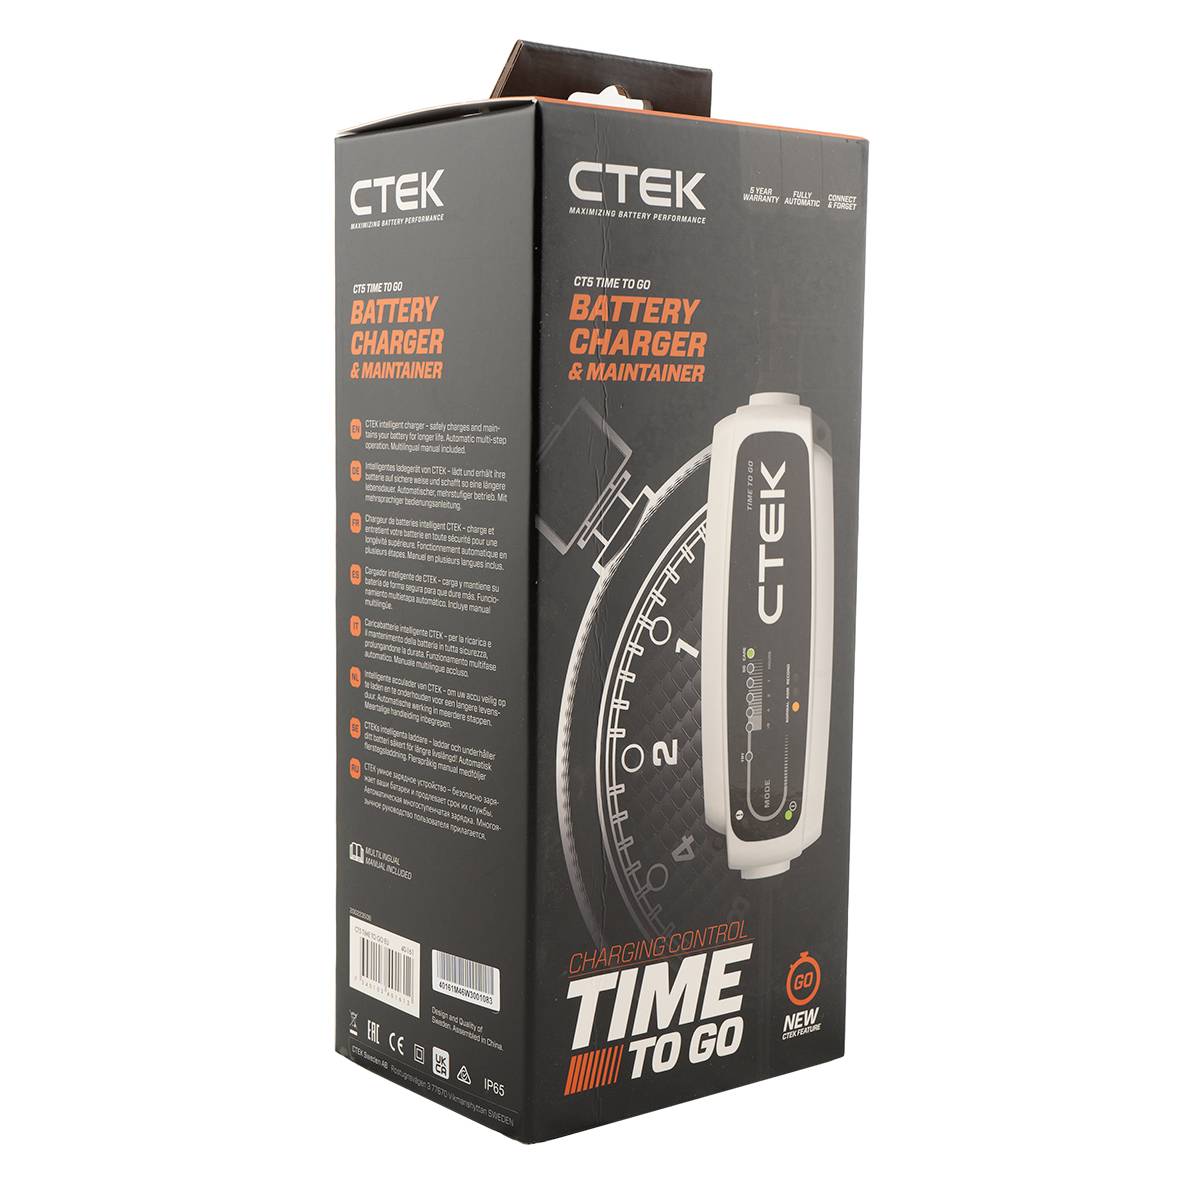 chargeur-de-batterie-ctek-ct5-time-to-go